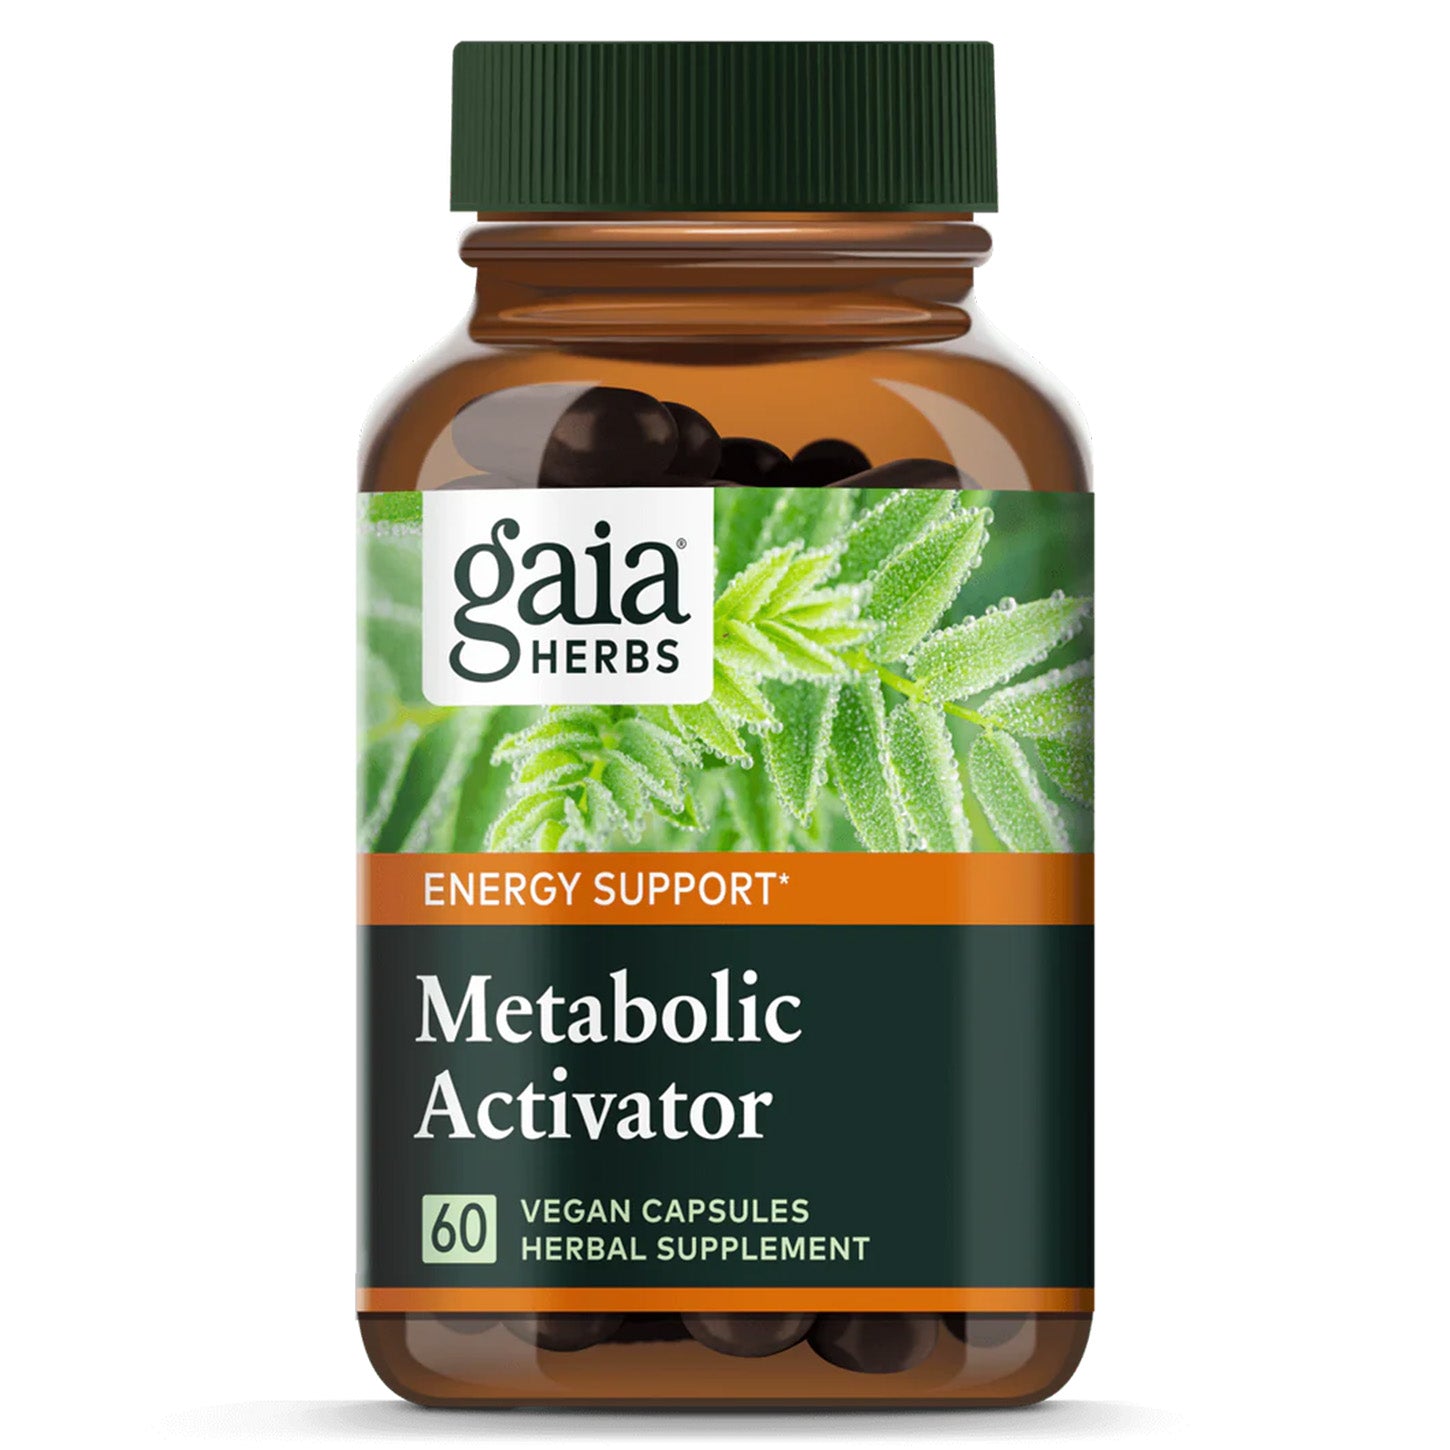 Optimiza tu Metabolismo con Metabolic Activator de Gaia Herbs | ProHealth Shop [Panamá]